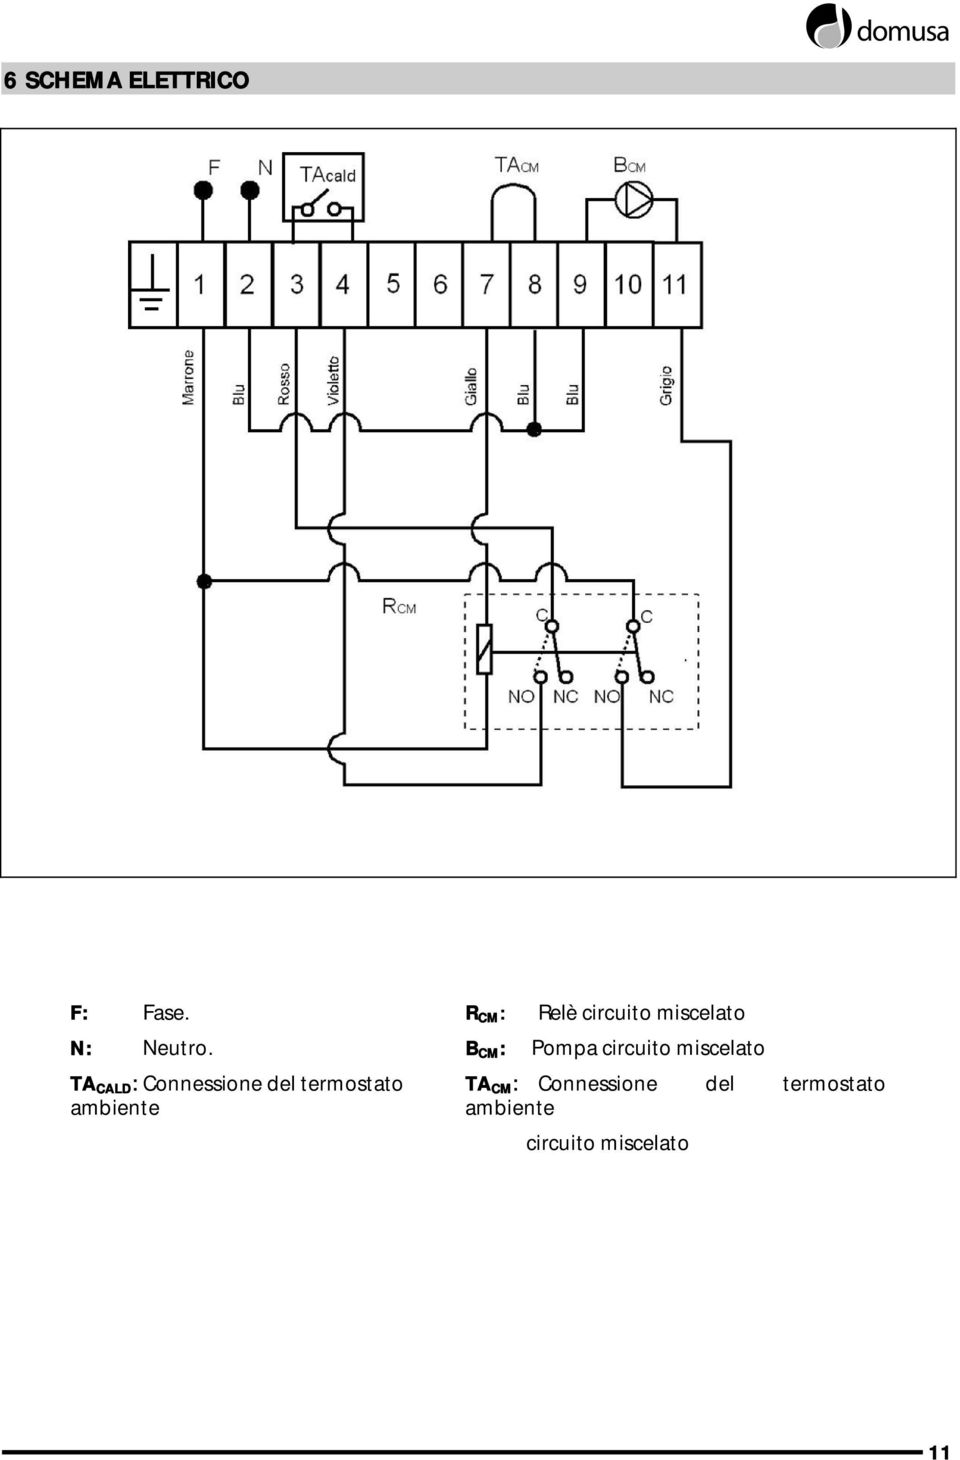 B CM : Pompa circuito miscelato TA CALD : Connessione